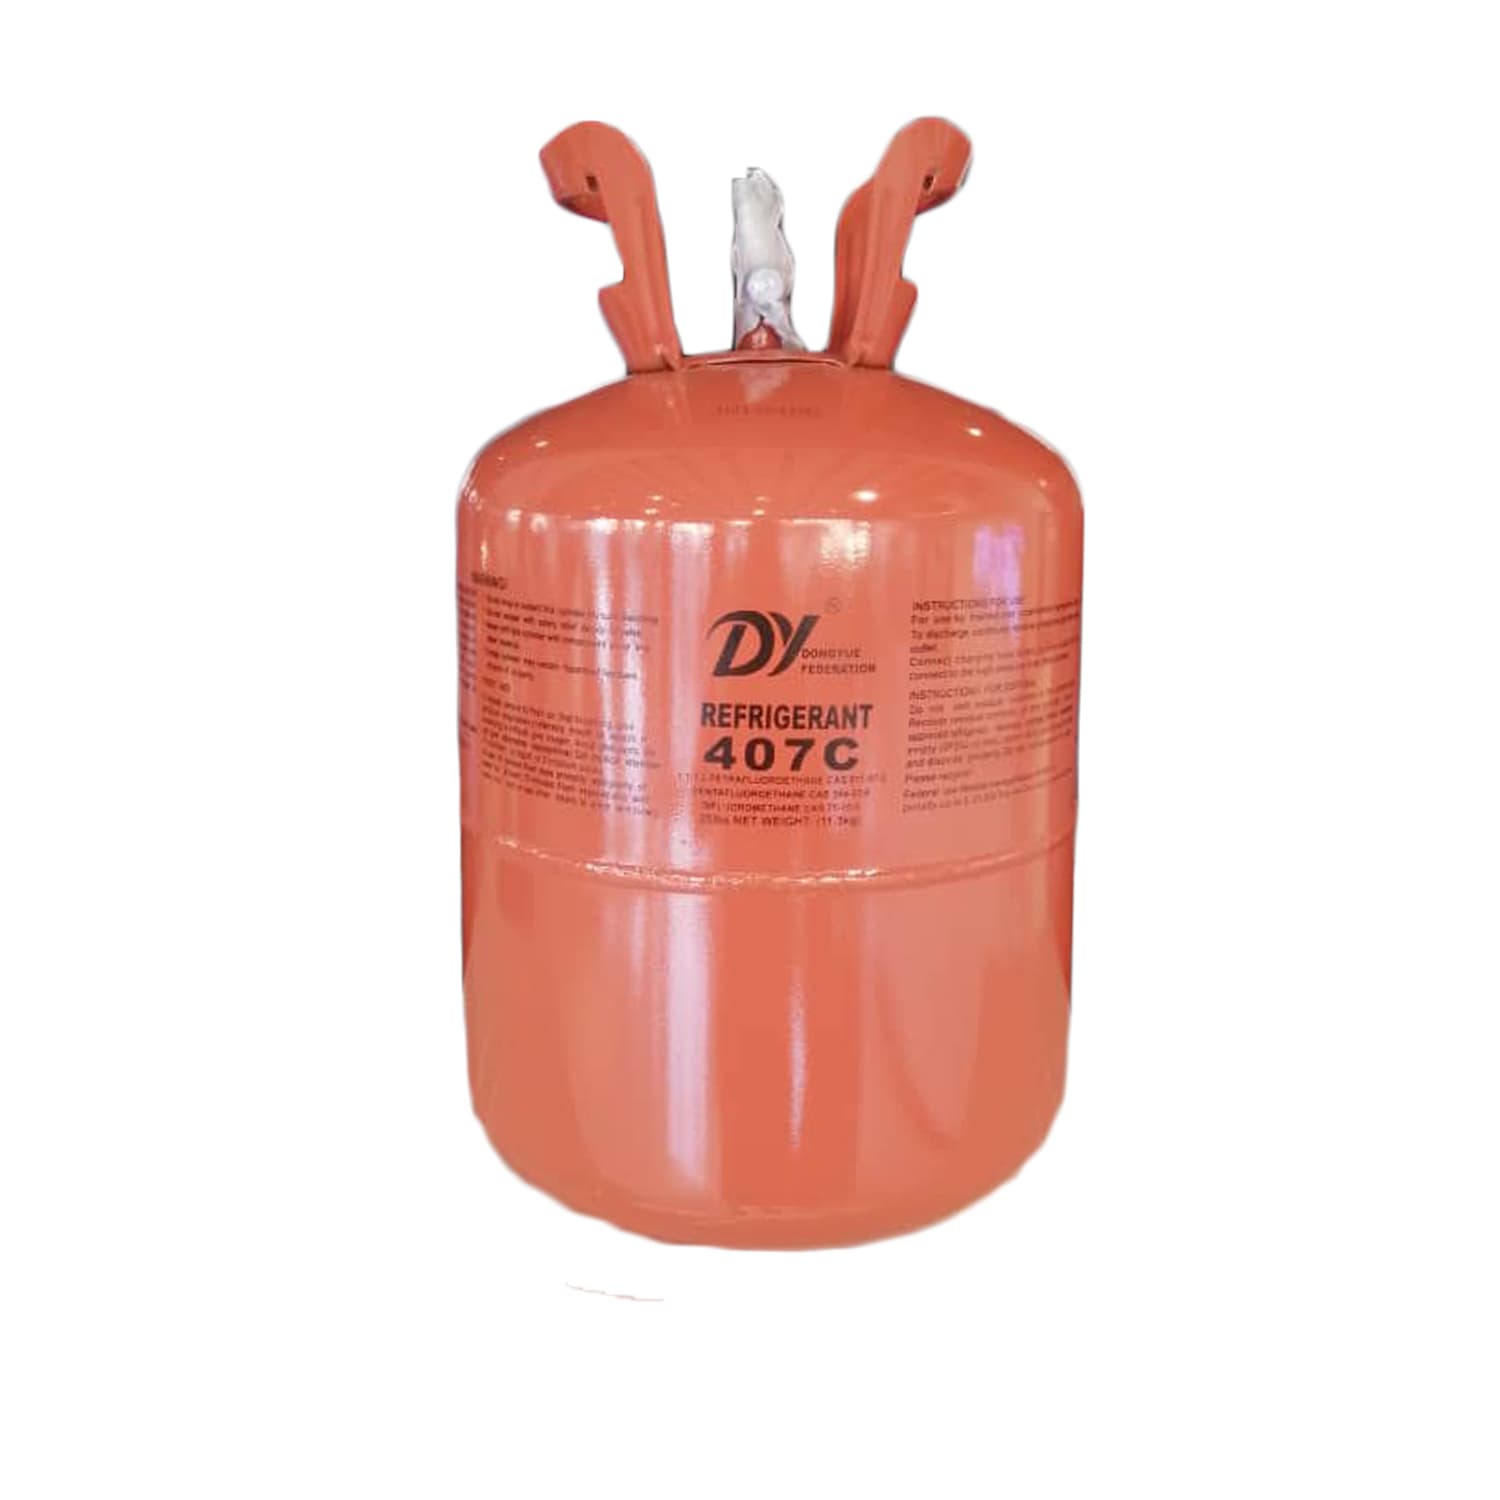 گاز مبرد R407C دیوای (Dy)